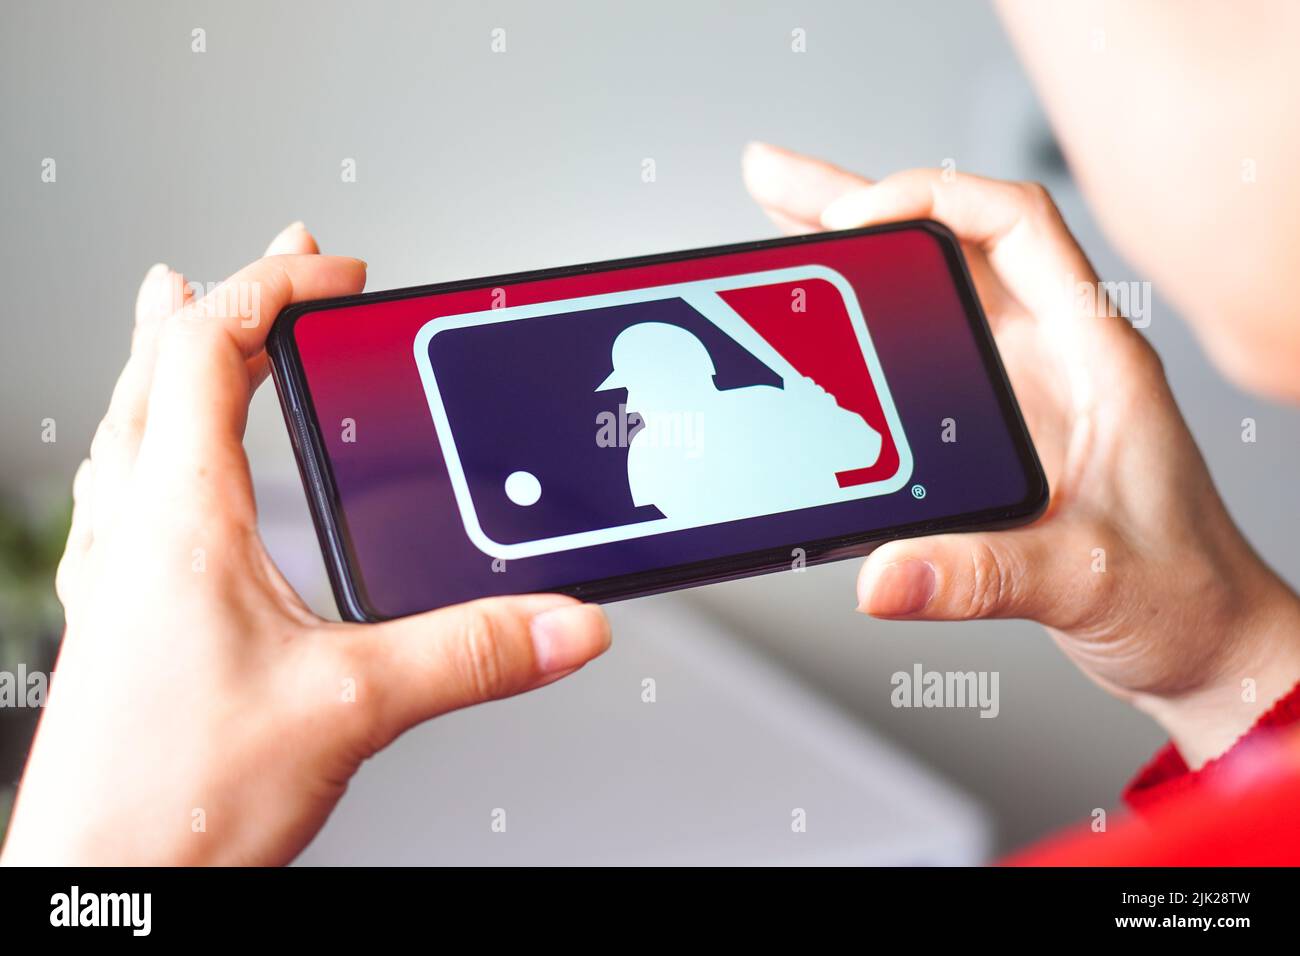 In questa figura, il logo Major League Baseball (MLB) viene visualizzato sullo schermo di uno smartphone. Foto Stock